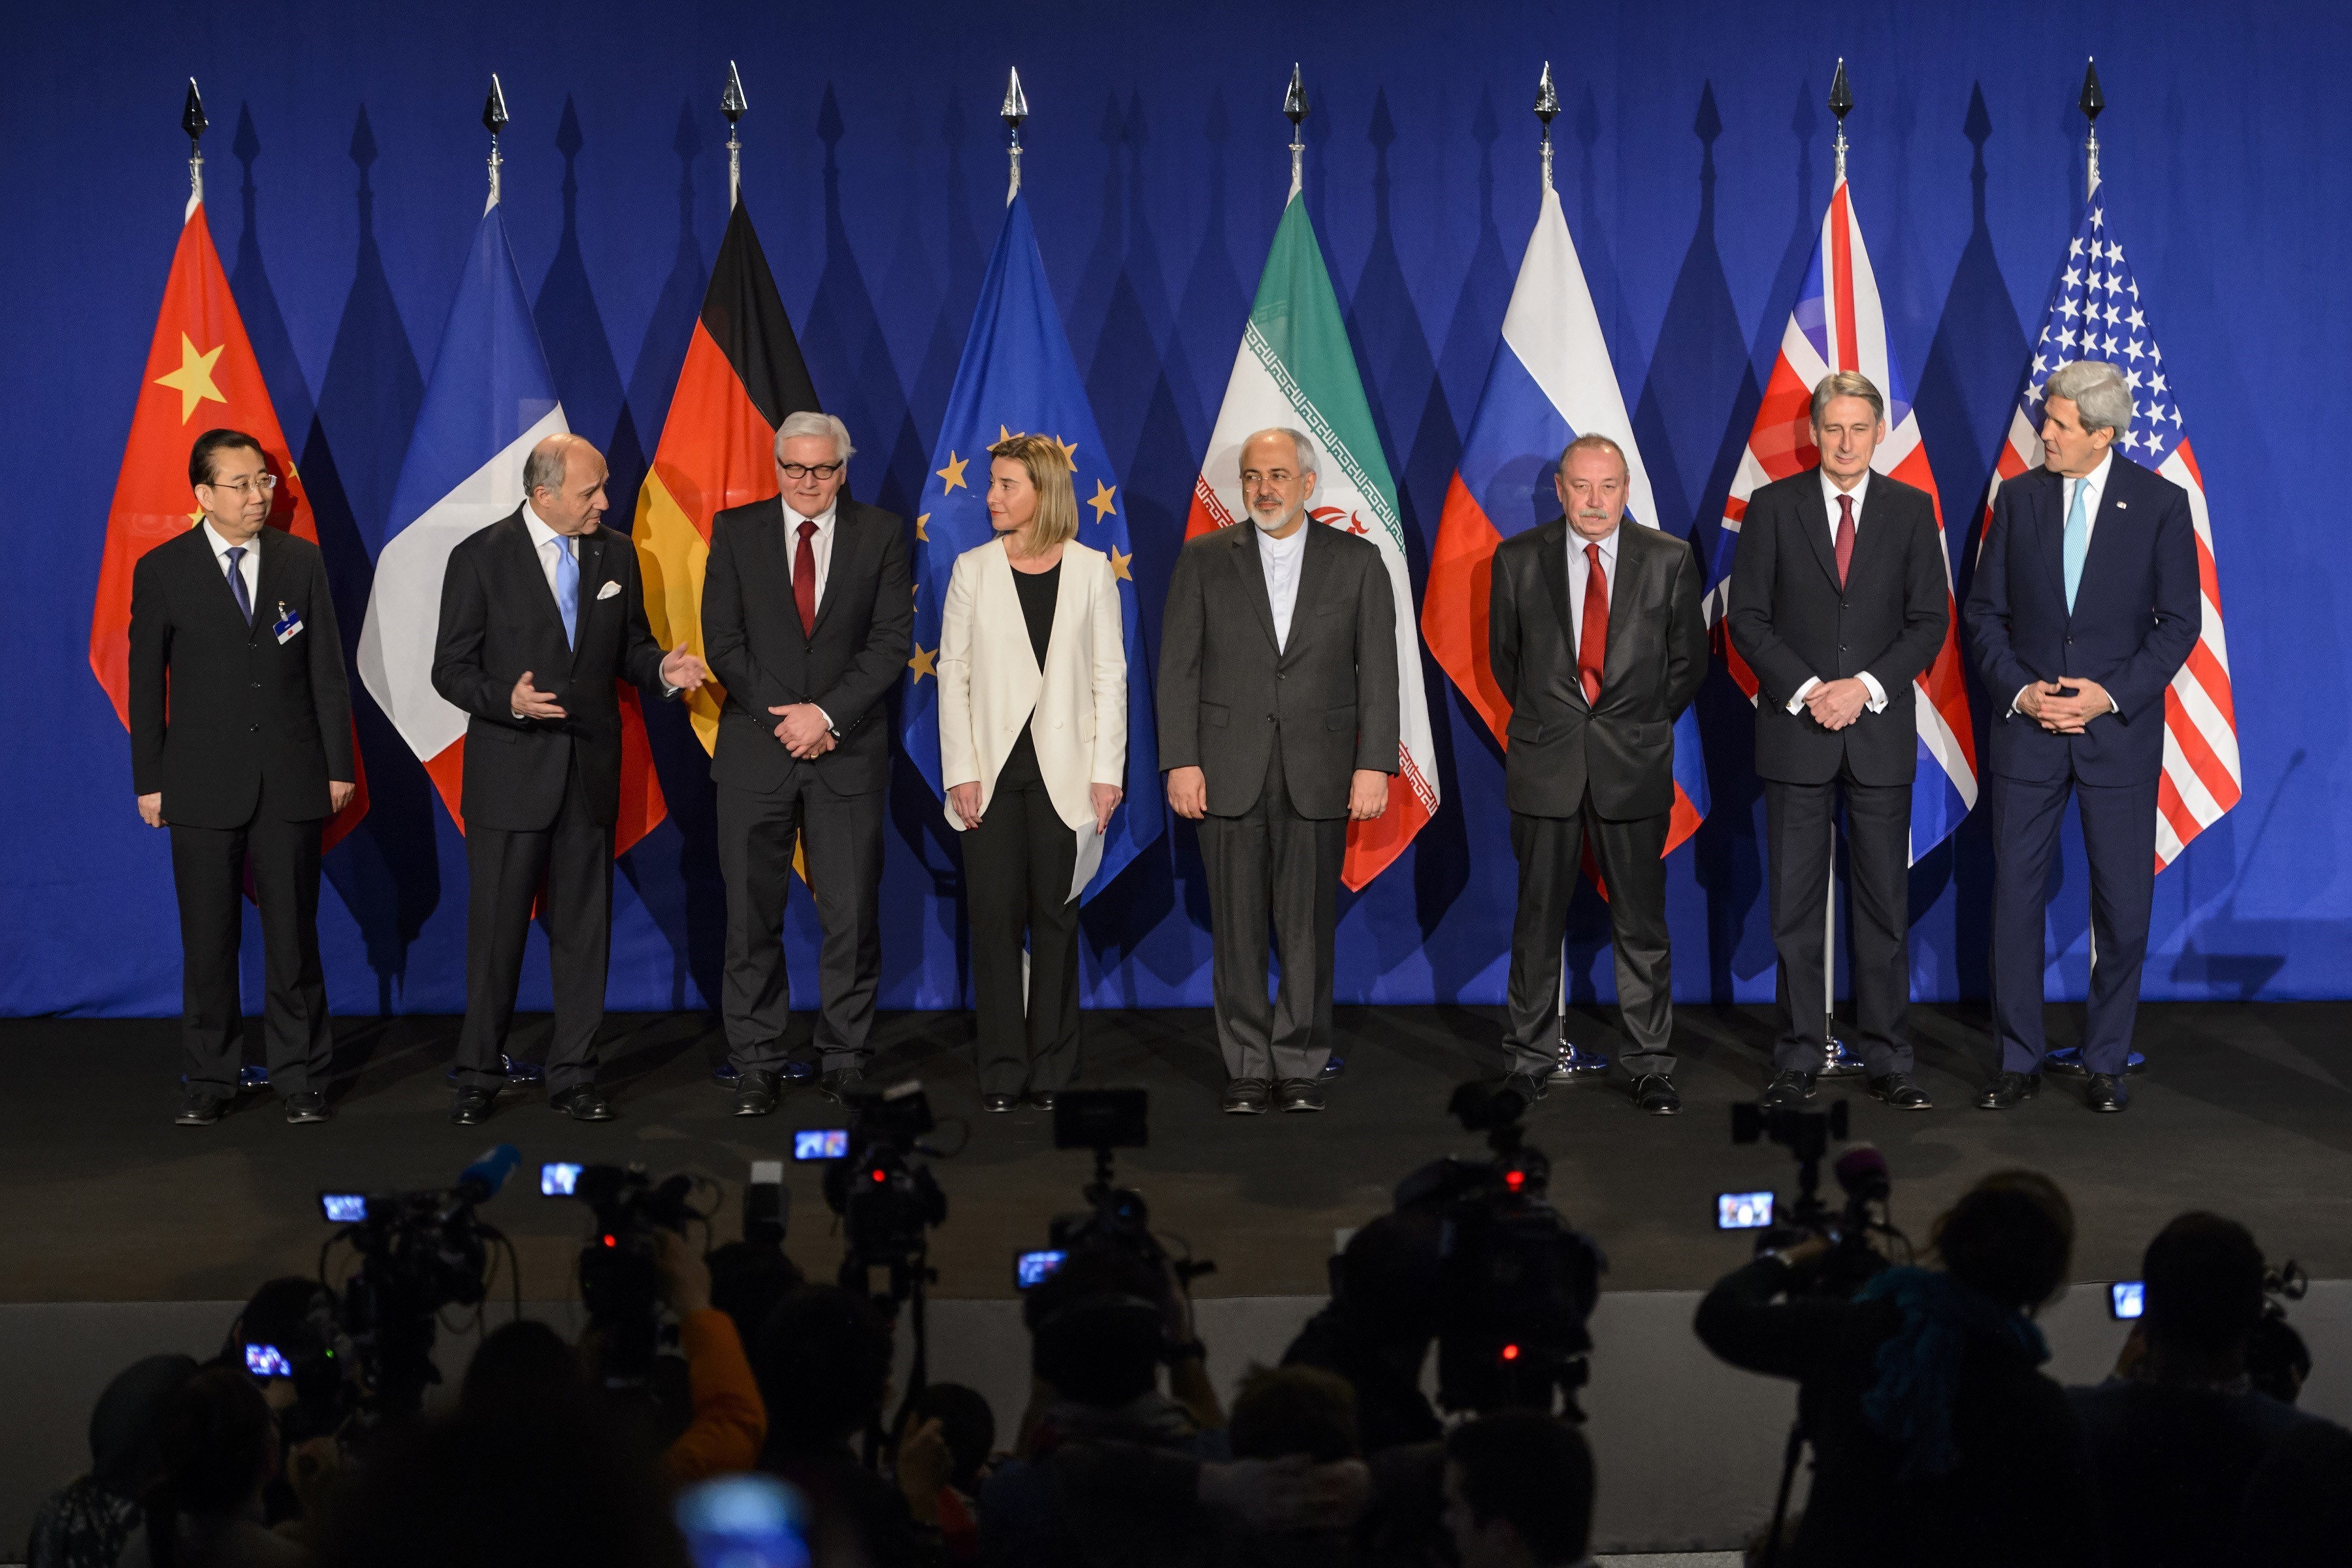 Ngoại trưởng Iran Mohammad Javad Zarif (thứ 5, trái) cùng đại diện các nước trong nhóm P5+1 trước khi ký thỏa thuận Kế hoạch hành động chung toàn diện (JCPOA) tại Lausanne, Thụy Sĩ ngày 2/4/2015. (Nguồn: AFP/TTXVN)